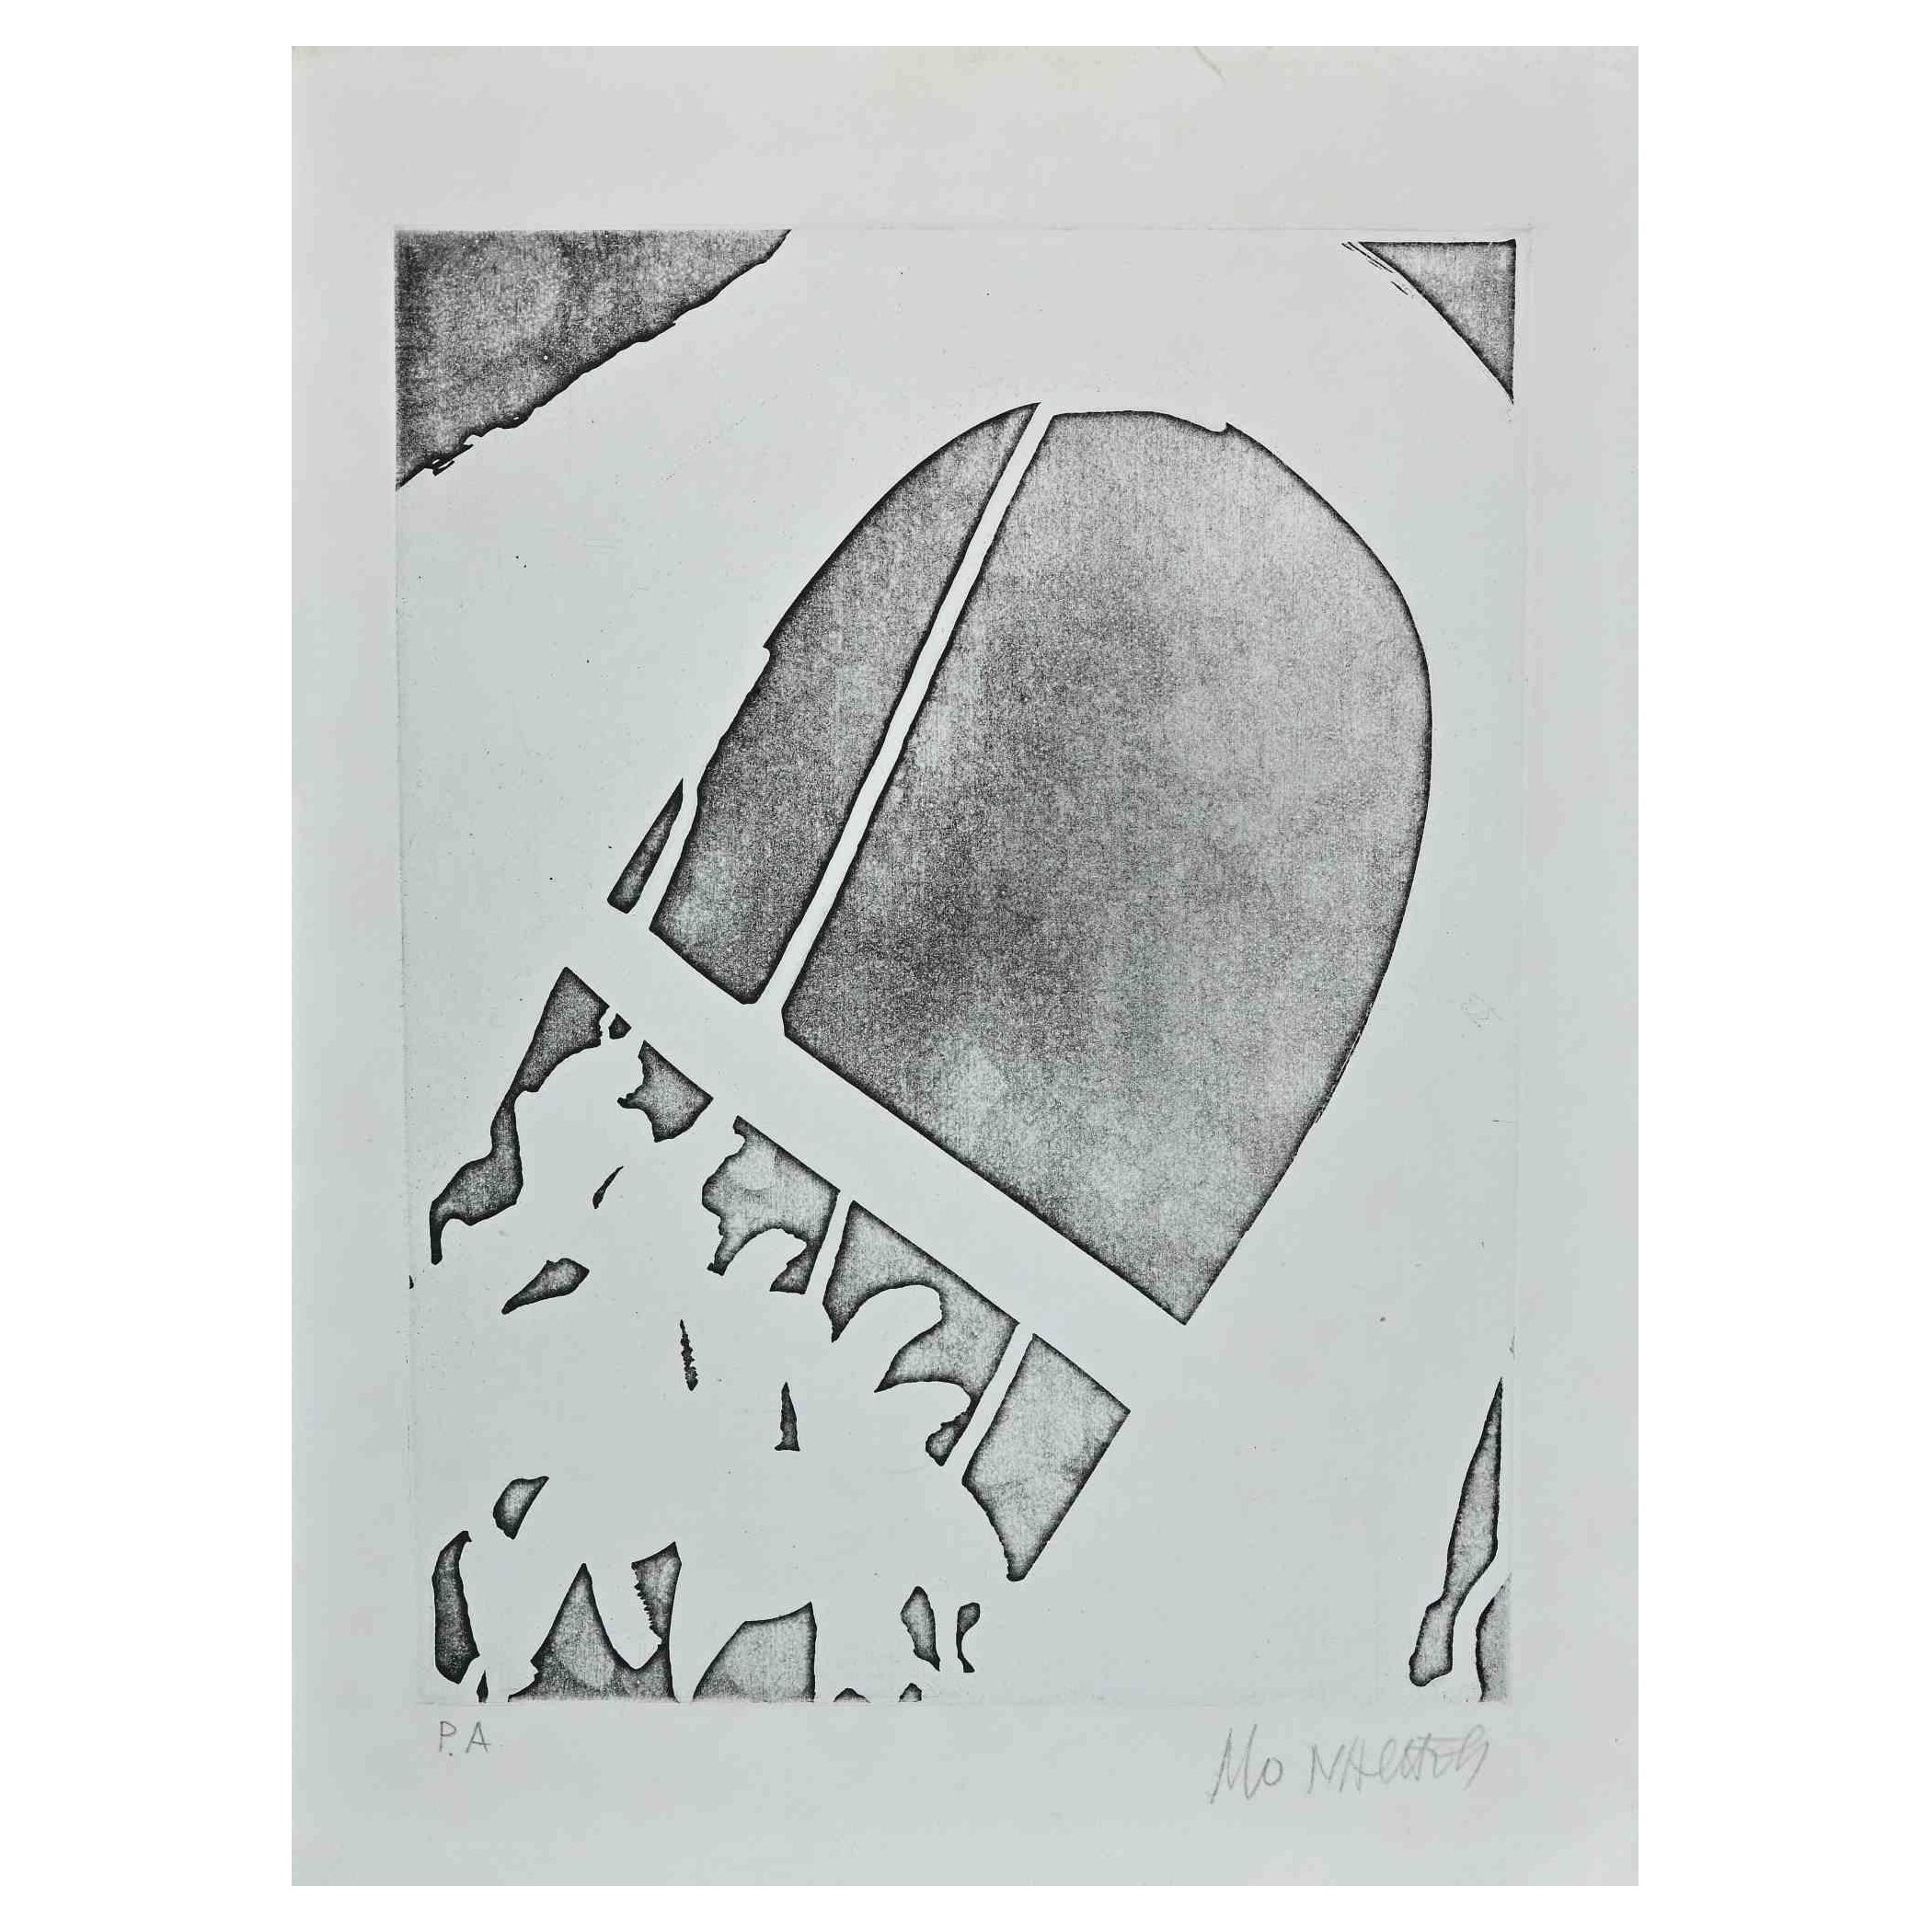 Figure et Arche est une gravure originale sur papier réalisée par Sante Monachesi.

Signé à la main en bas à droite au crayon.

il s'agit d'une édition d'épreuves d'artiste en bas à gauche.

Bonnes conditions.

L'œuvre d'art est créée dans une